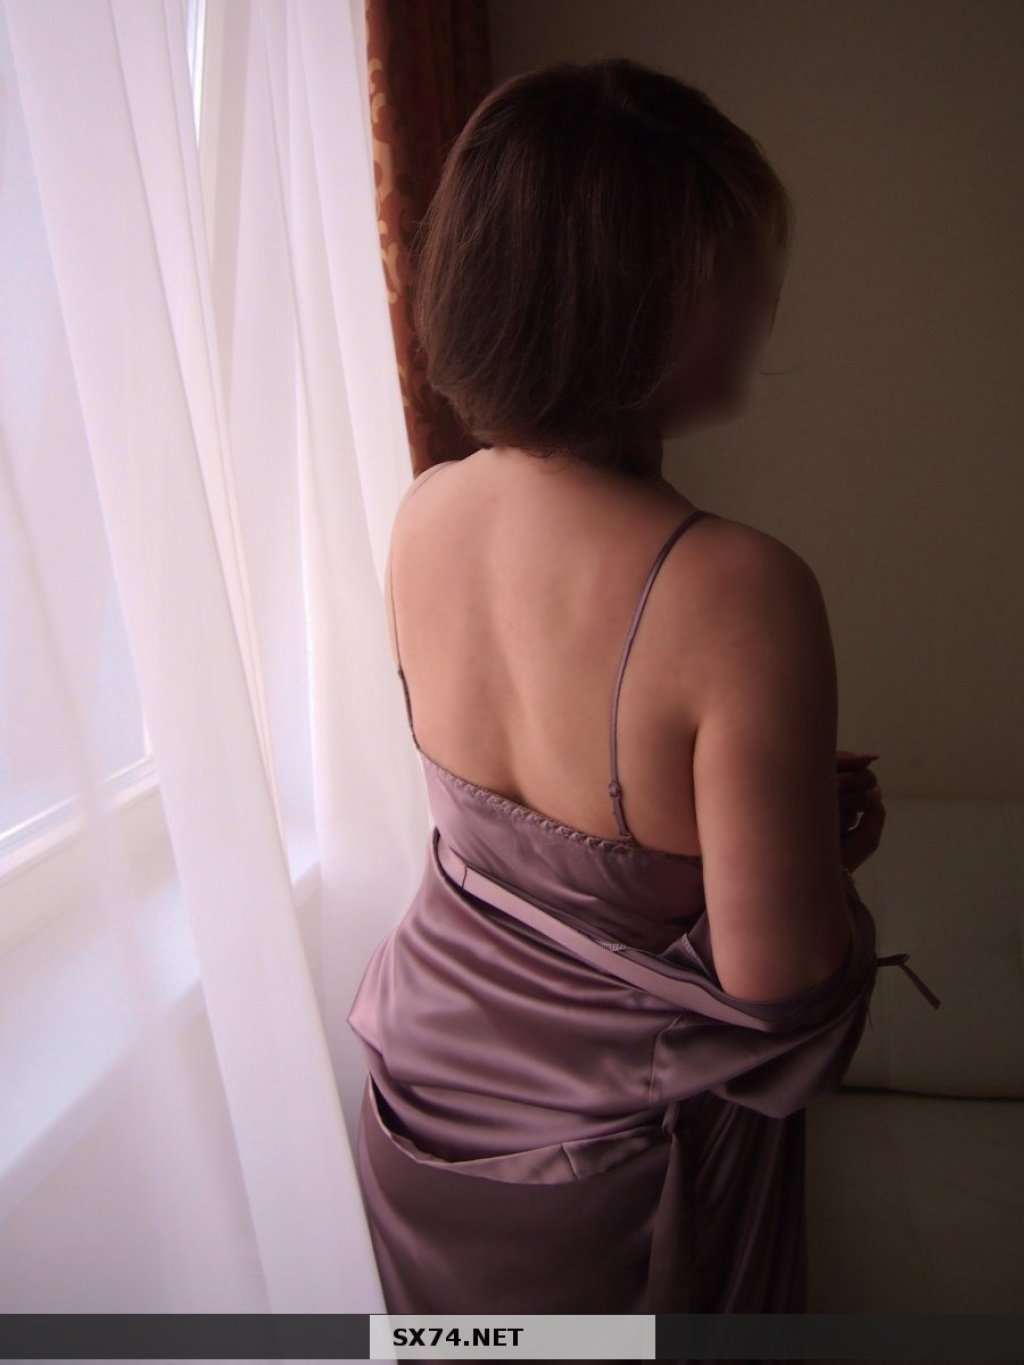 Кристина: проститутки индивидуалки в Челябинске